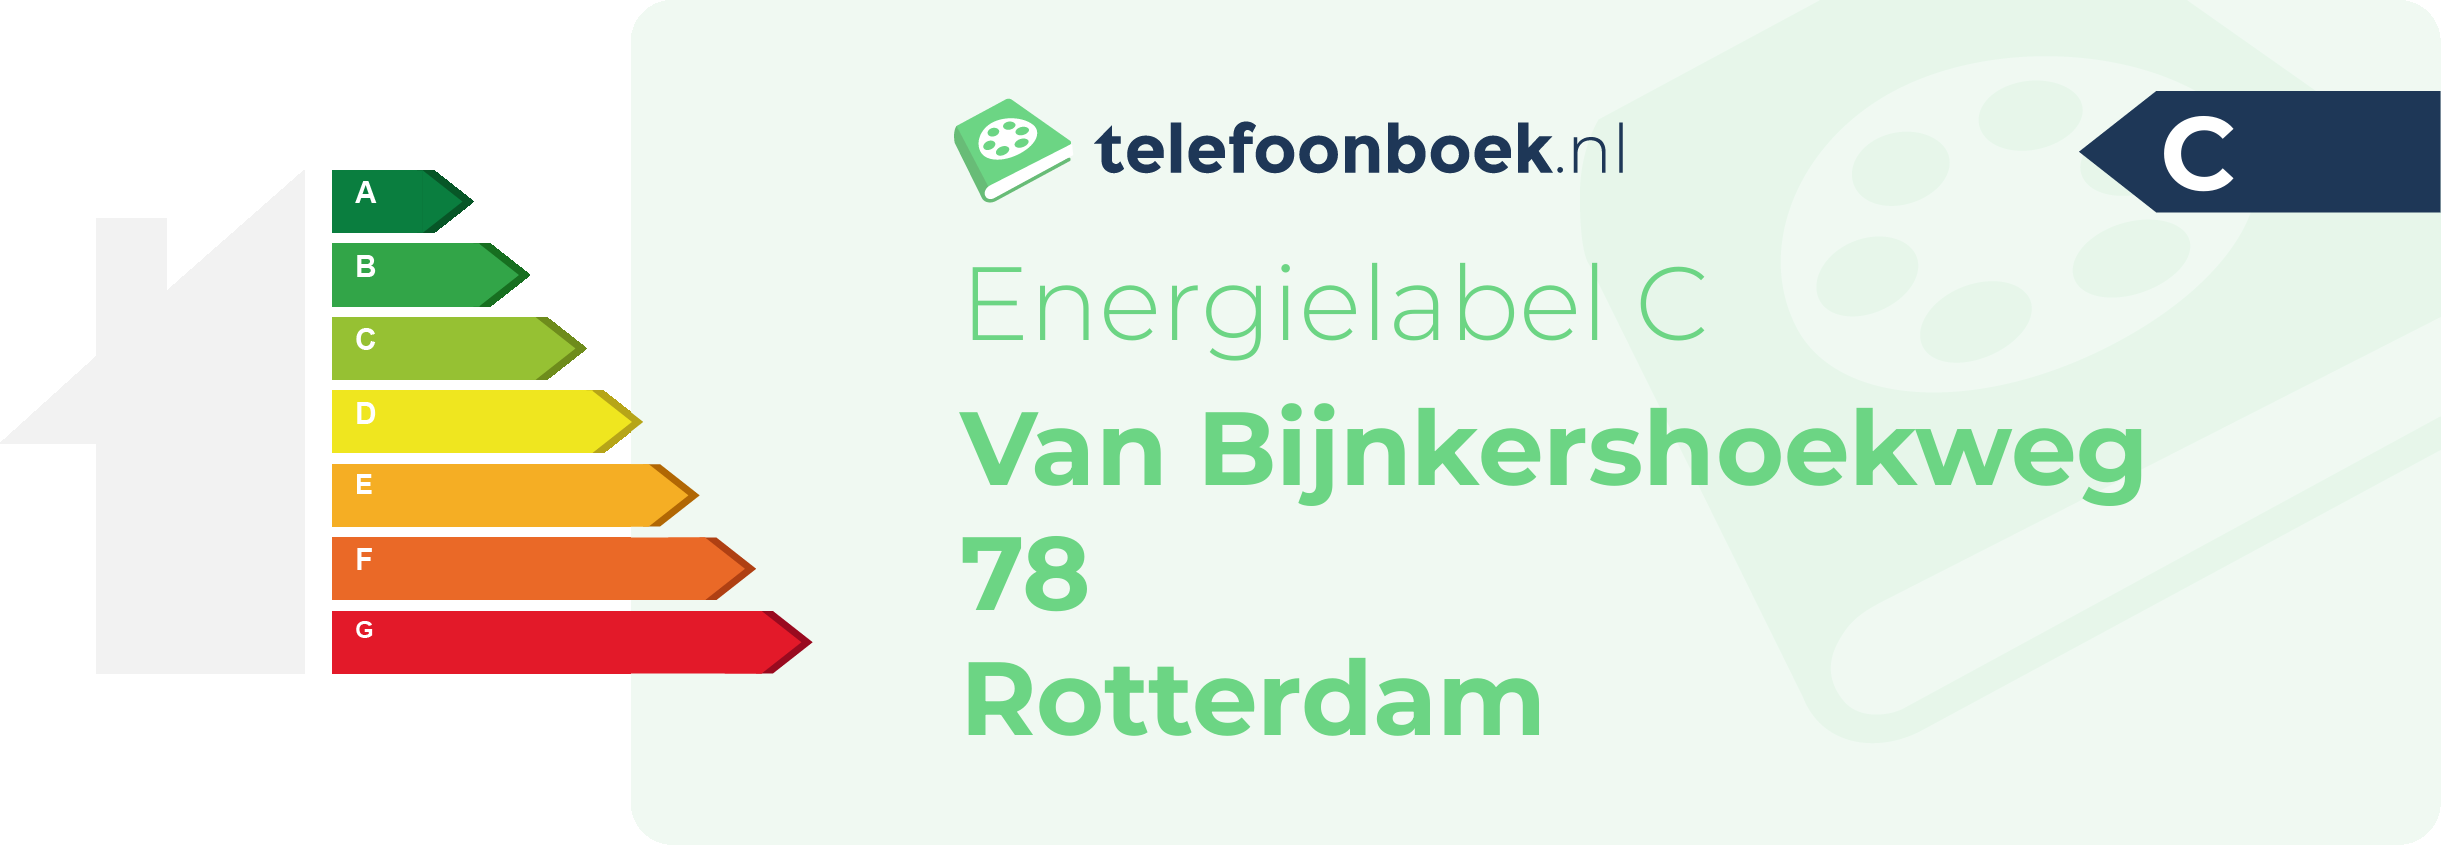 Energielabel Van Bijnkershoekweg 78 Rotterdam